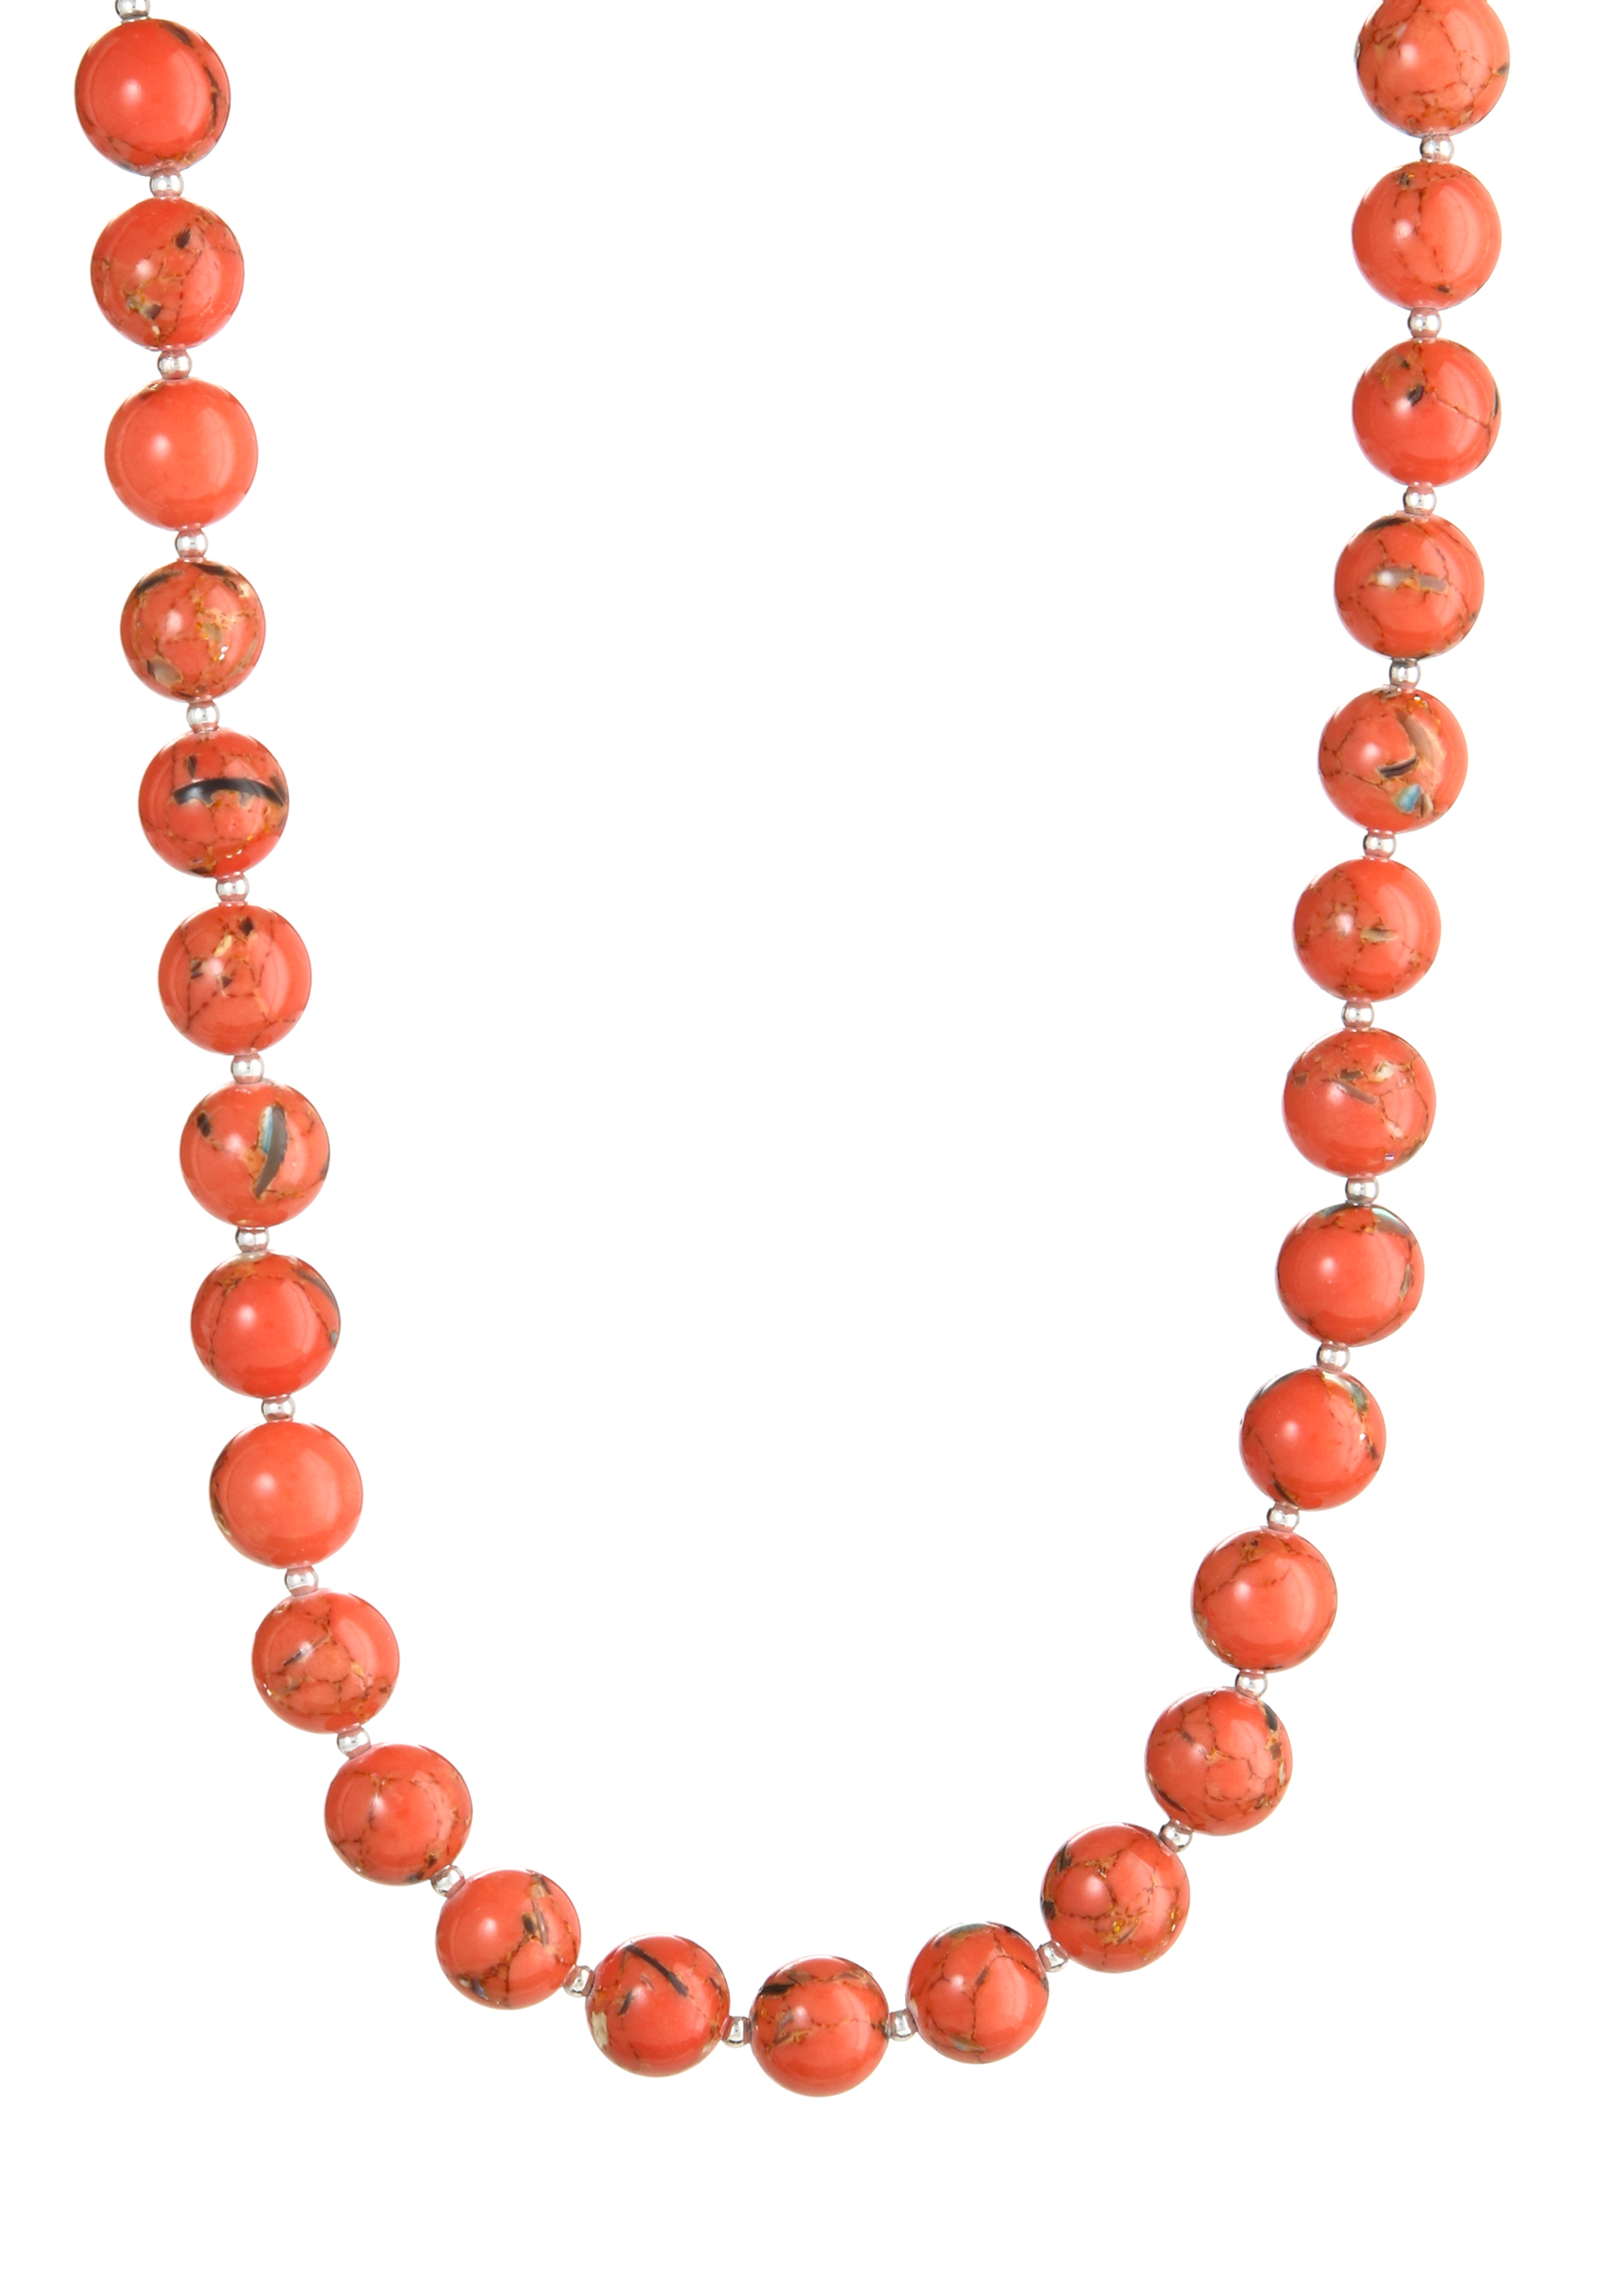 Колье "Изобильная жизнь" Apsara, цвет оранжевый, размер 50 матине - фото 5